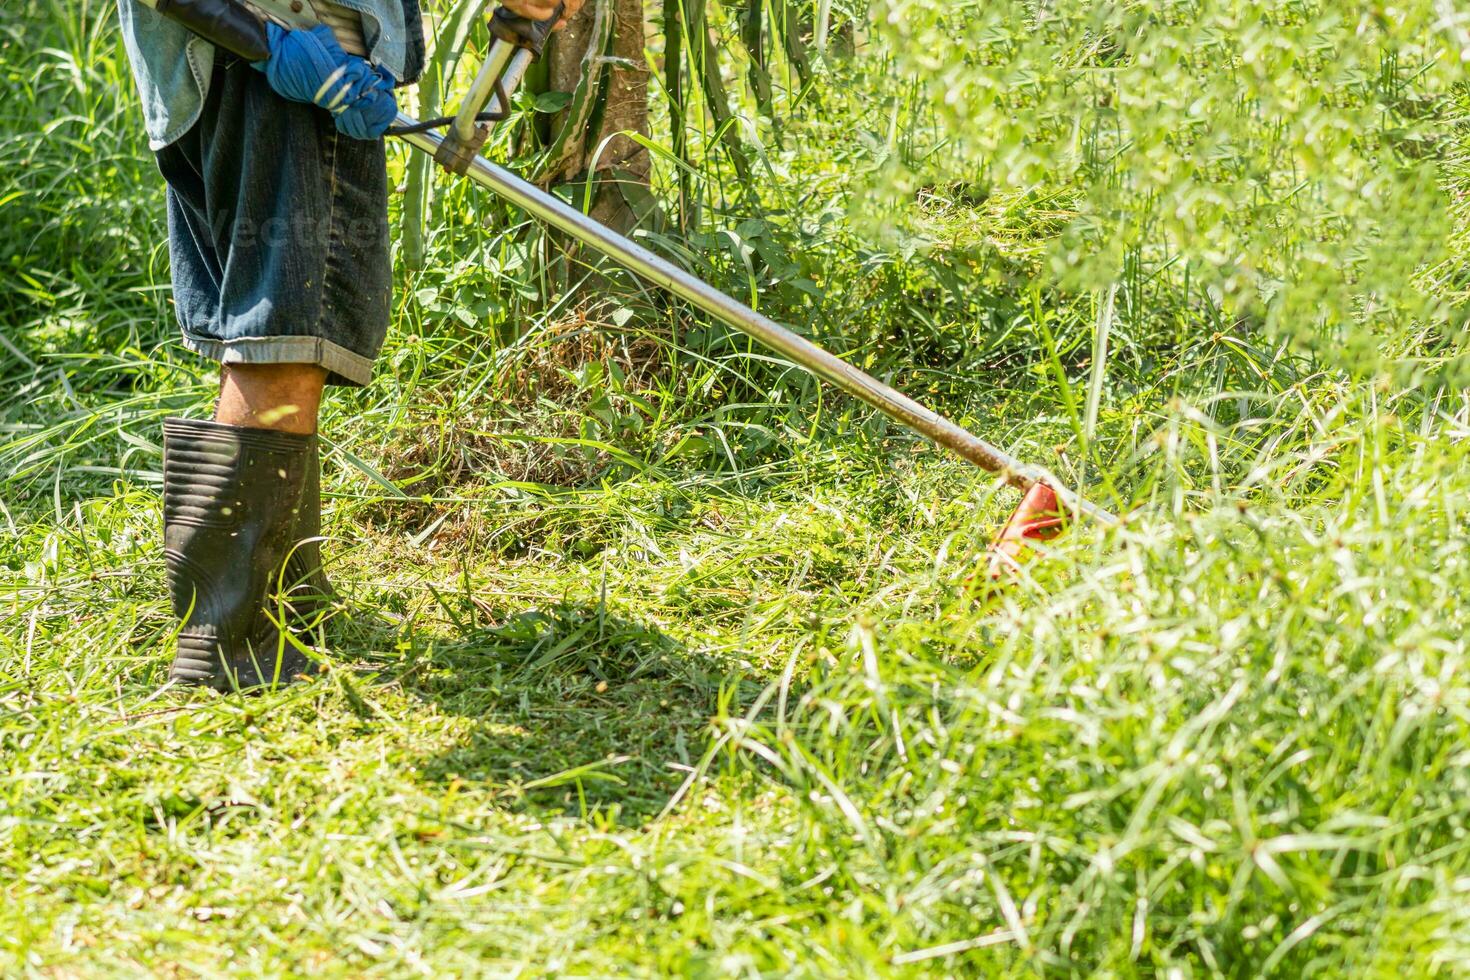 jordbrukare använda sig av klippning skära gräs arbete utomhus- på trädgård sommar dag, ett person man jobb använda sig av verktyg klippare på äng foto